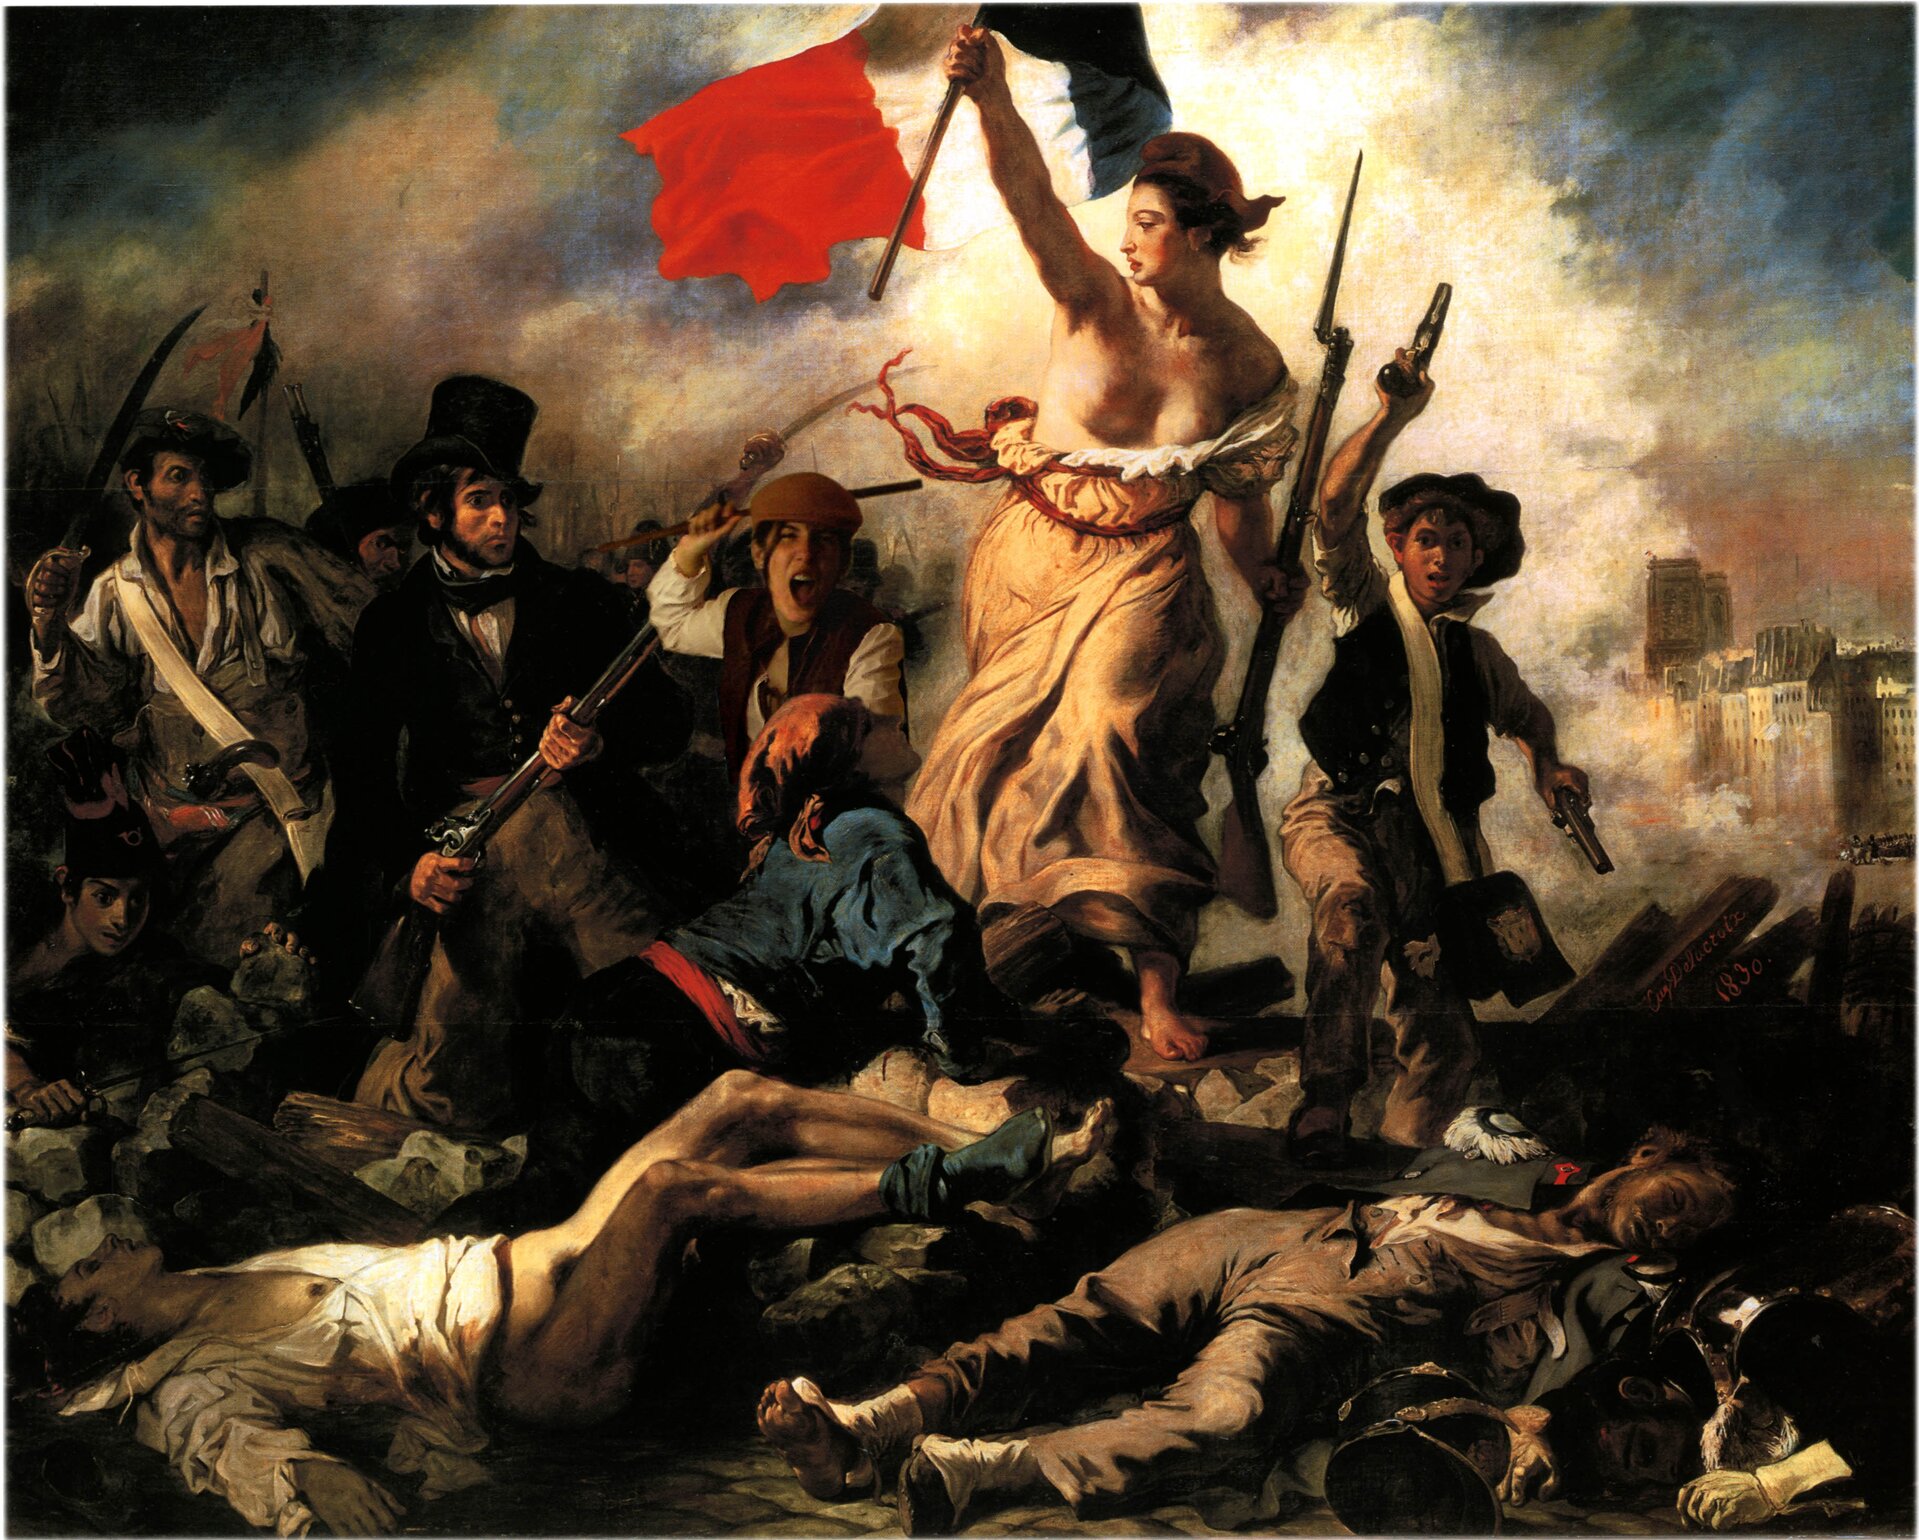 Ilustracja przedstawia obraz Eugène’a Delacroixa „Wolność wiodąca lud na barykady”. Malarz ukazał symbolicznie wolność jako kobietę. W rozdartej sukni, z flagą francuską w jednej dłoni i bagnetem w drugiej prowadzi grupę ludzi. To żołnierze. Wspólnie wyruszają po zwycięstwo i wolność. U dołu obrazu namalowane martwe postaci. W oddali widoczne są budynki. Tło stanowi ciemne niebo i kłębiący się dookoła dym.